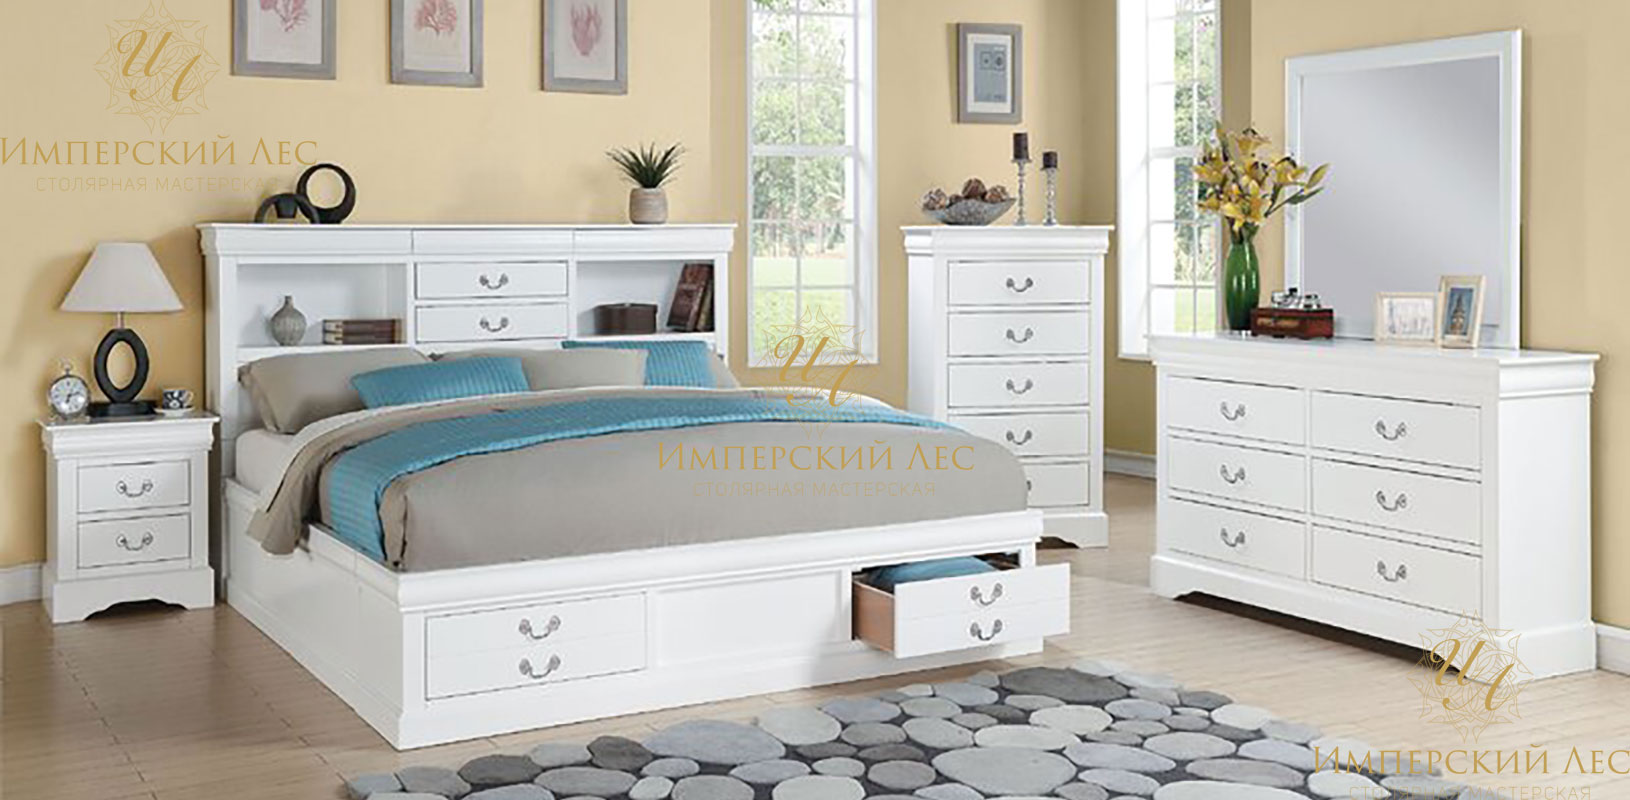 Кровать из массива дерева с конфигурируемым спальным гарнитуром в белом цвете